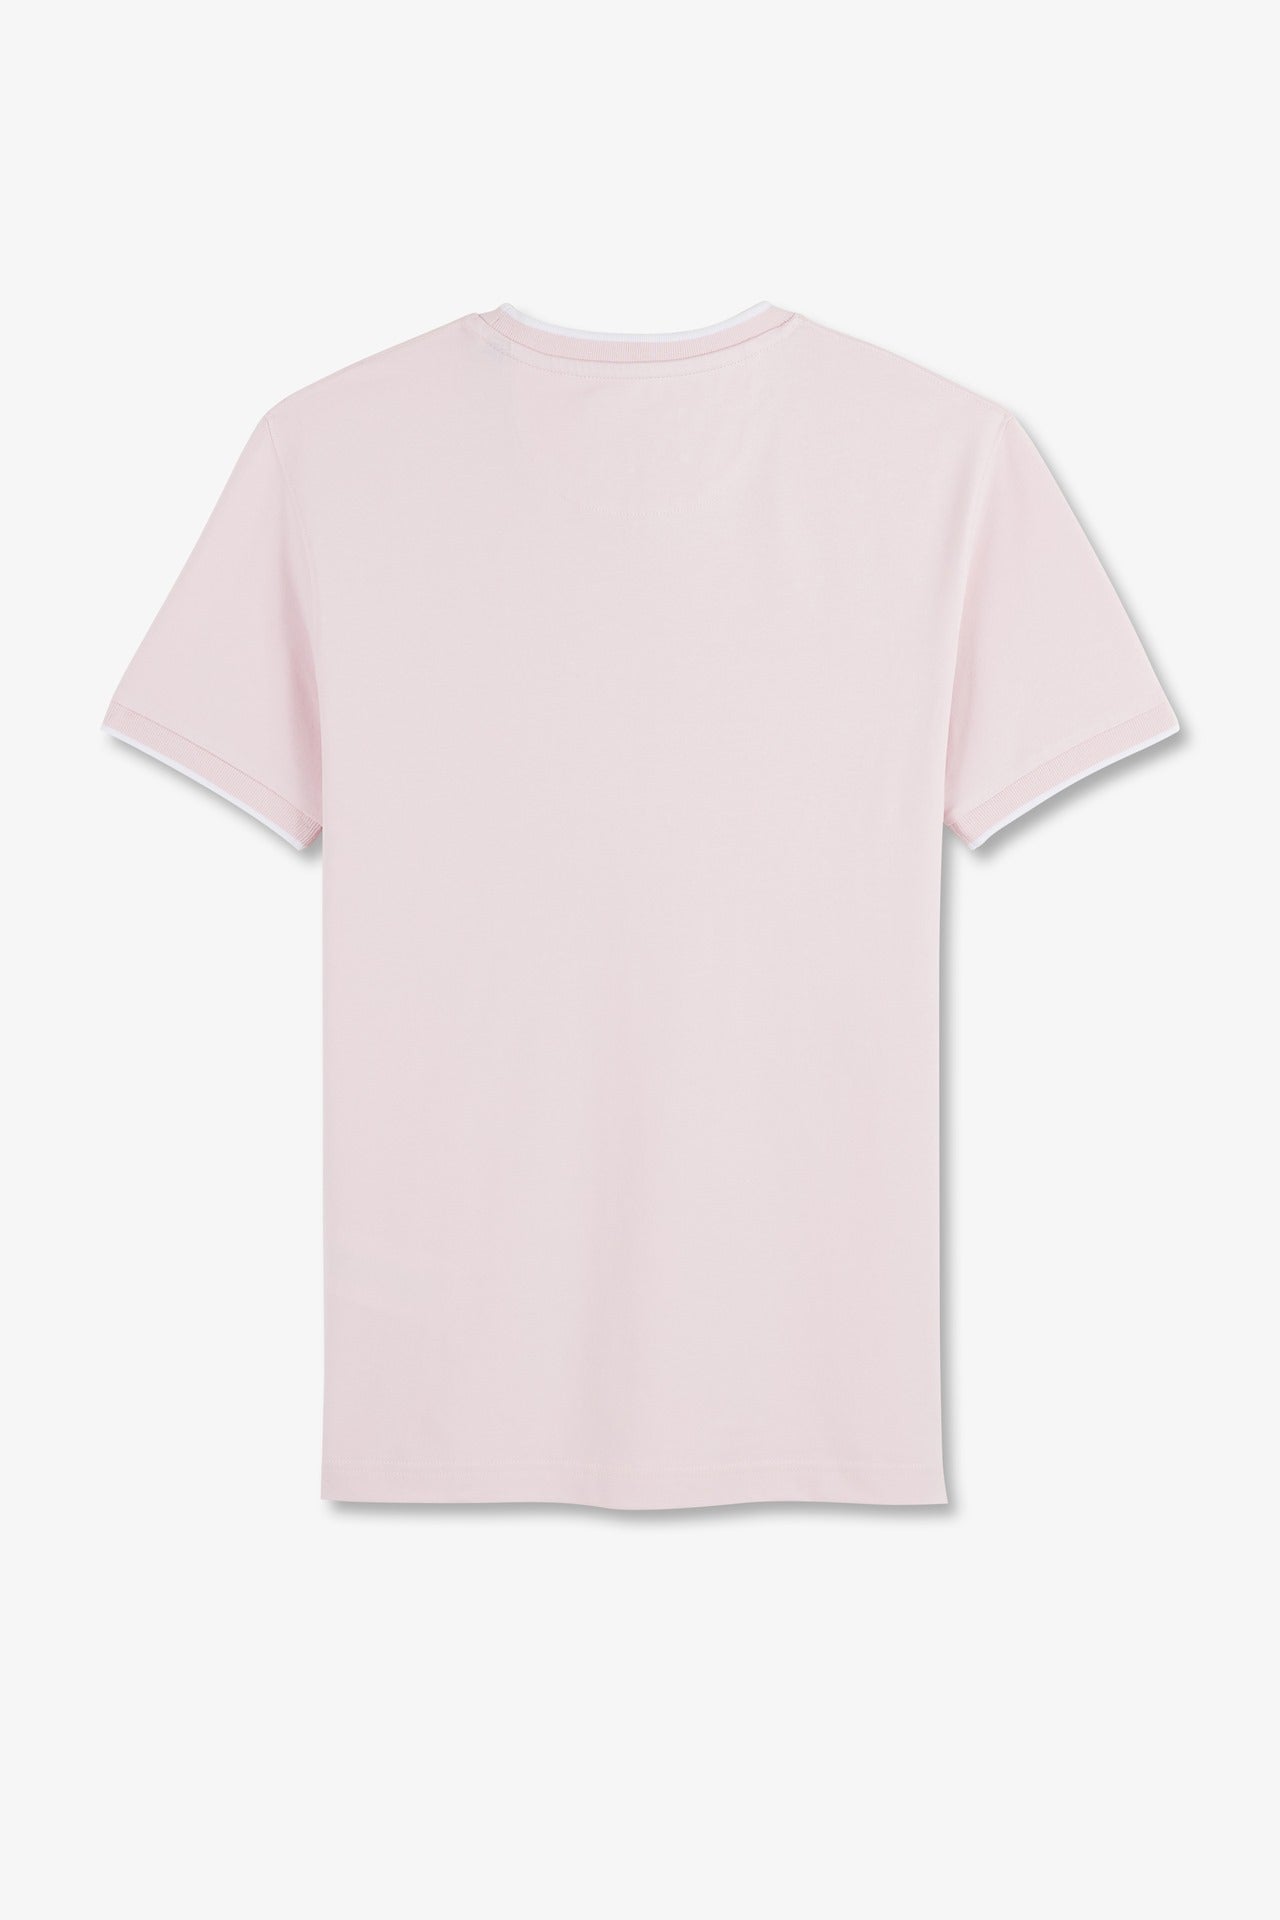 T-shirt manches courtes uni rose en coton stretch